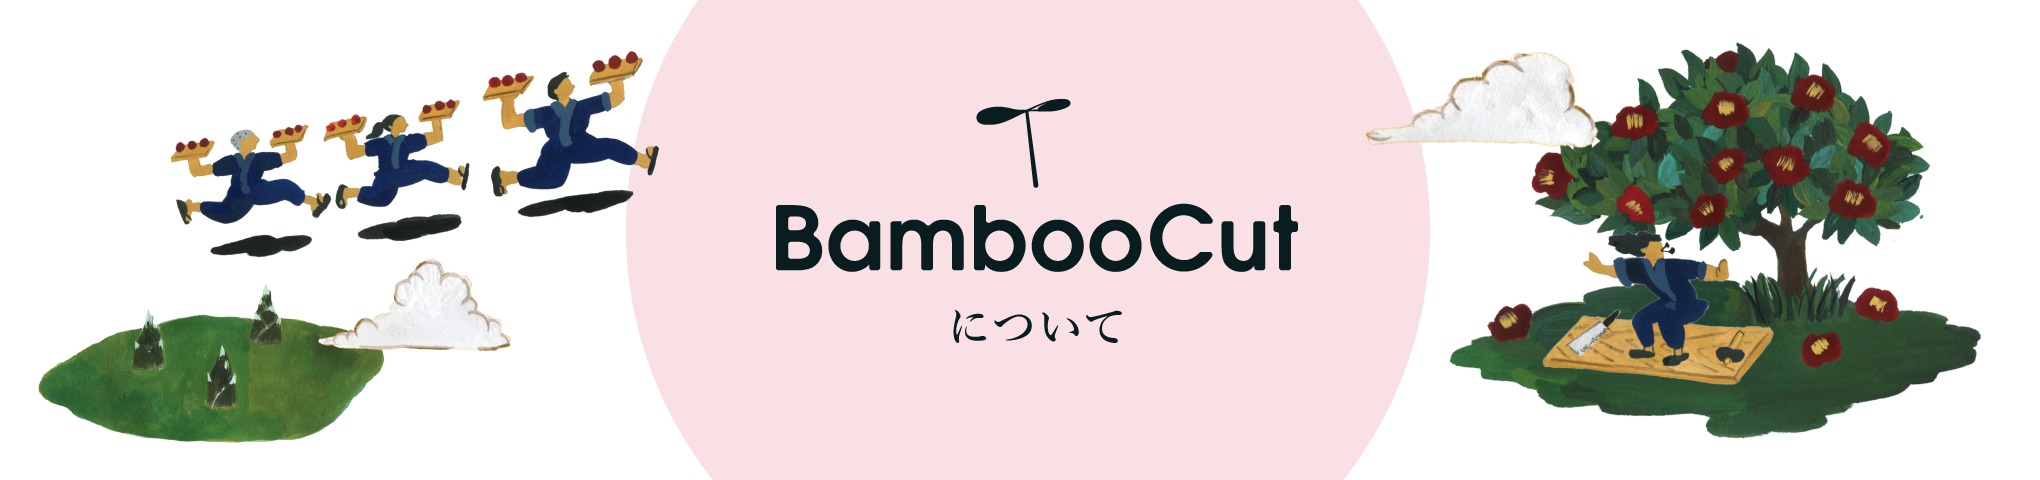 BambooCutについて